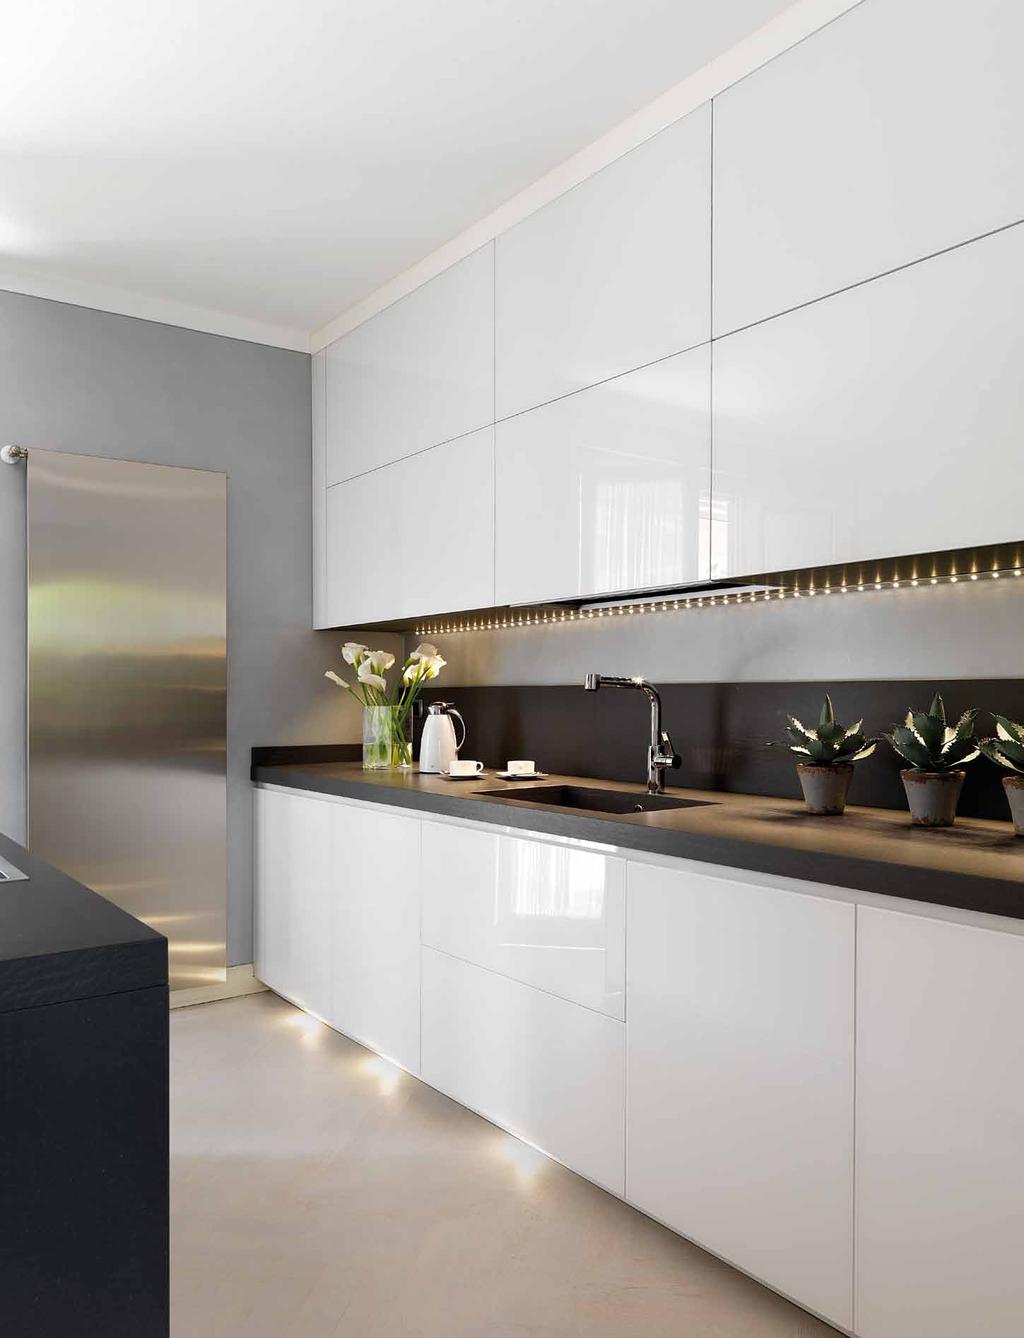 Fiore all occhiello della casa è la grande cucina dove si fondono design minimale e tecnologia di ultima generazione.